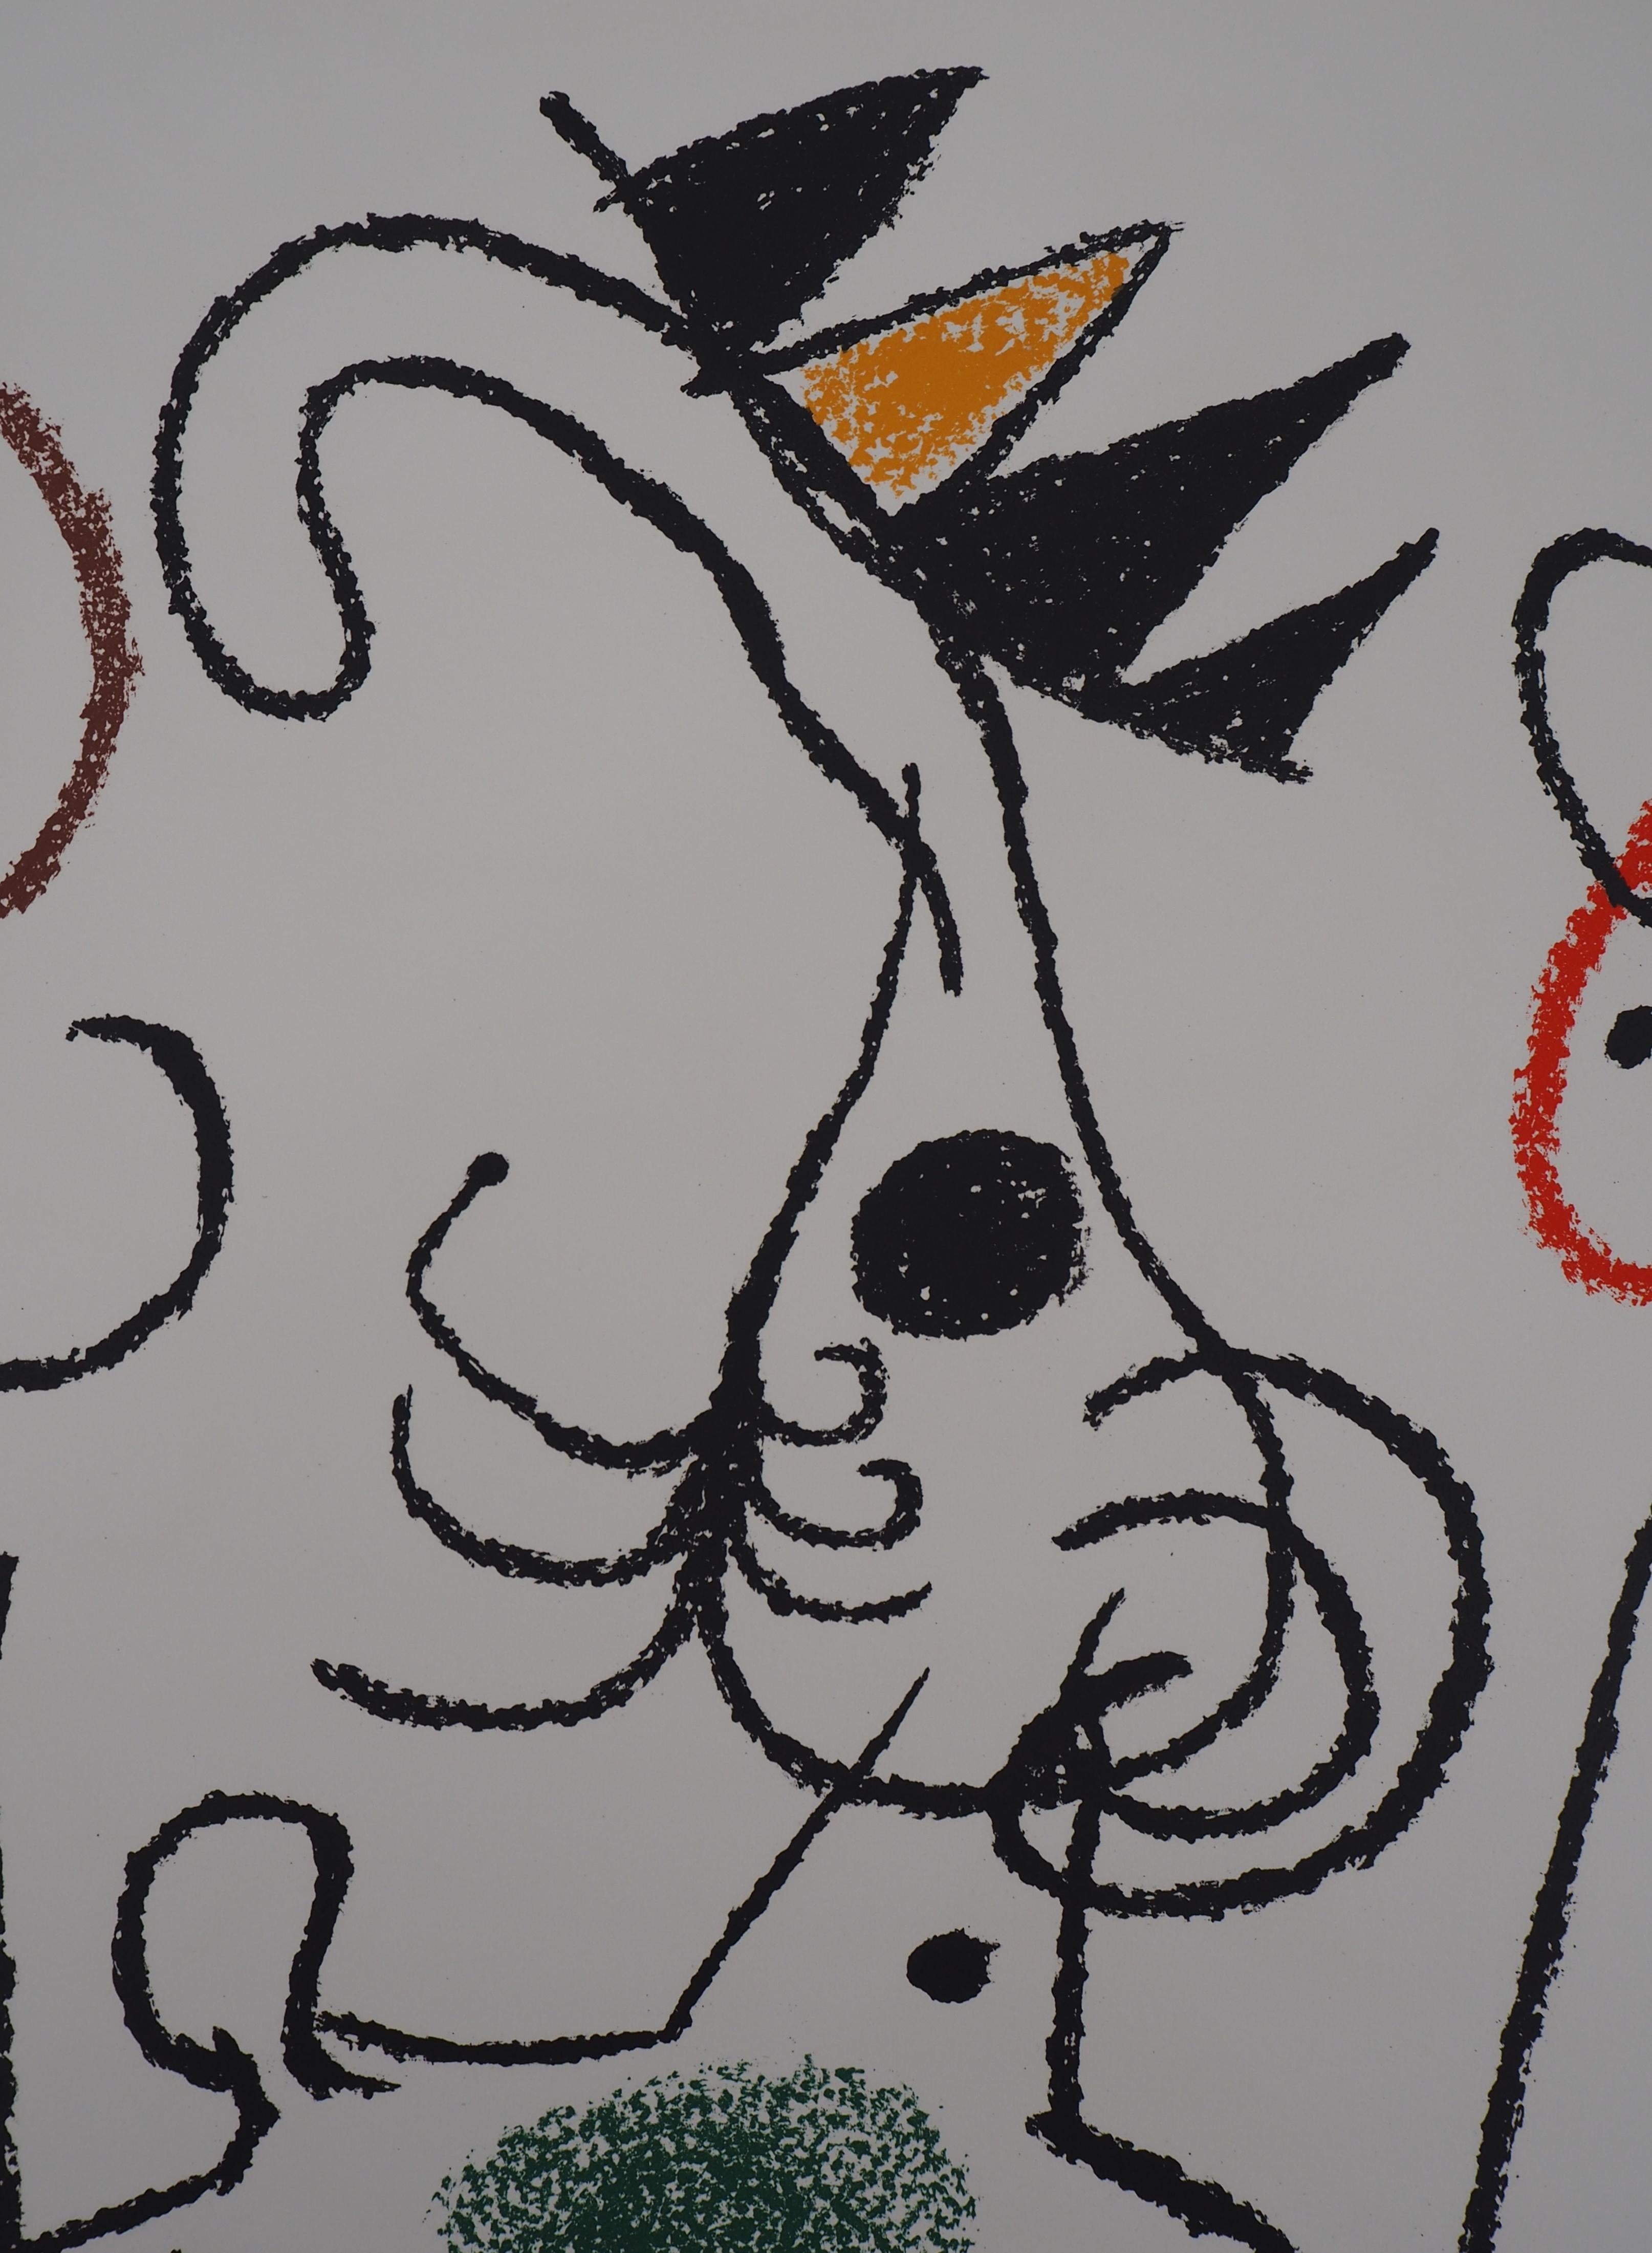 Joan MIRO
Ubu : König mit zwei Frauen

Original-Steinlithographie (Gedruckt im Atelier Mourlot)
Handsigniert mit Bleistift
Auf Arches Vellum 50 x 66 cm
Aus einer limitierten Auflage von 120 Exemplaren

REFERENZEN : Katalog Mourlot #757/88, Cramer